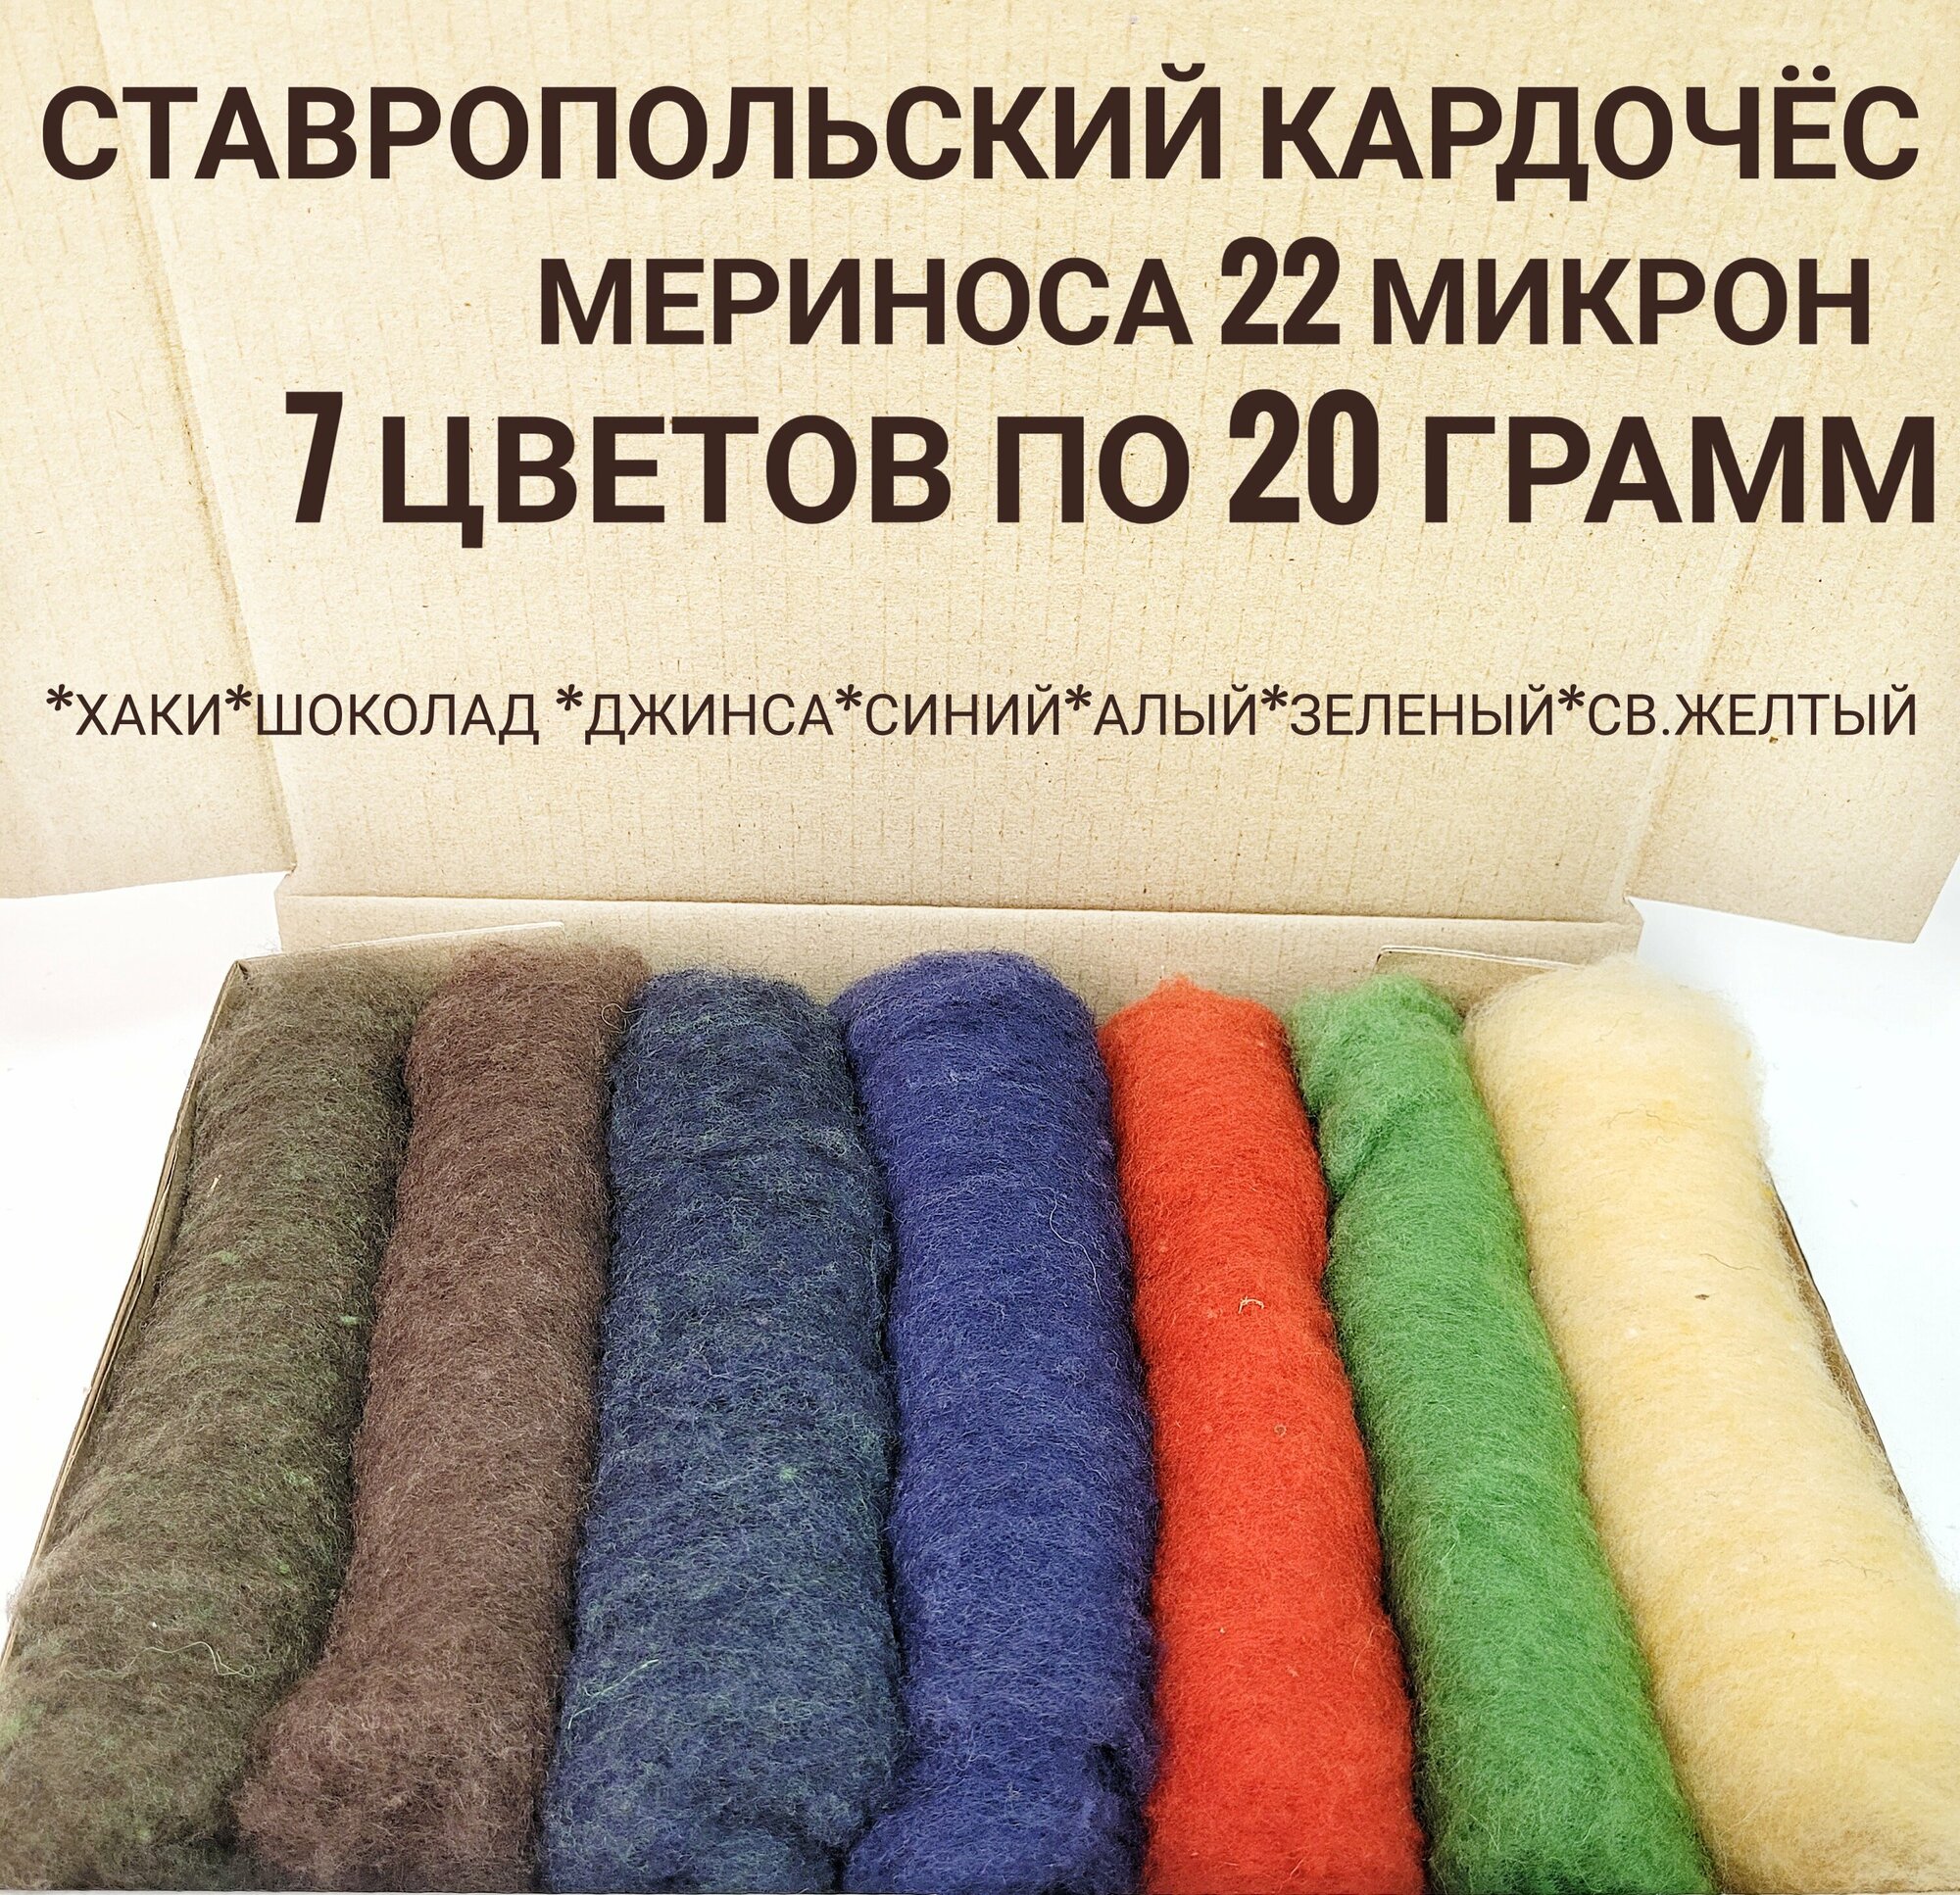 Шерсть для валяния кардочес, набор 7 цветов по 20 грамм, тонкая мериносовая шерсть